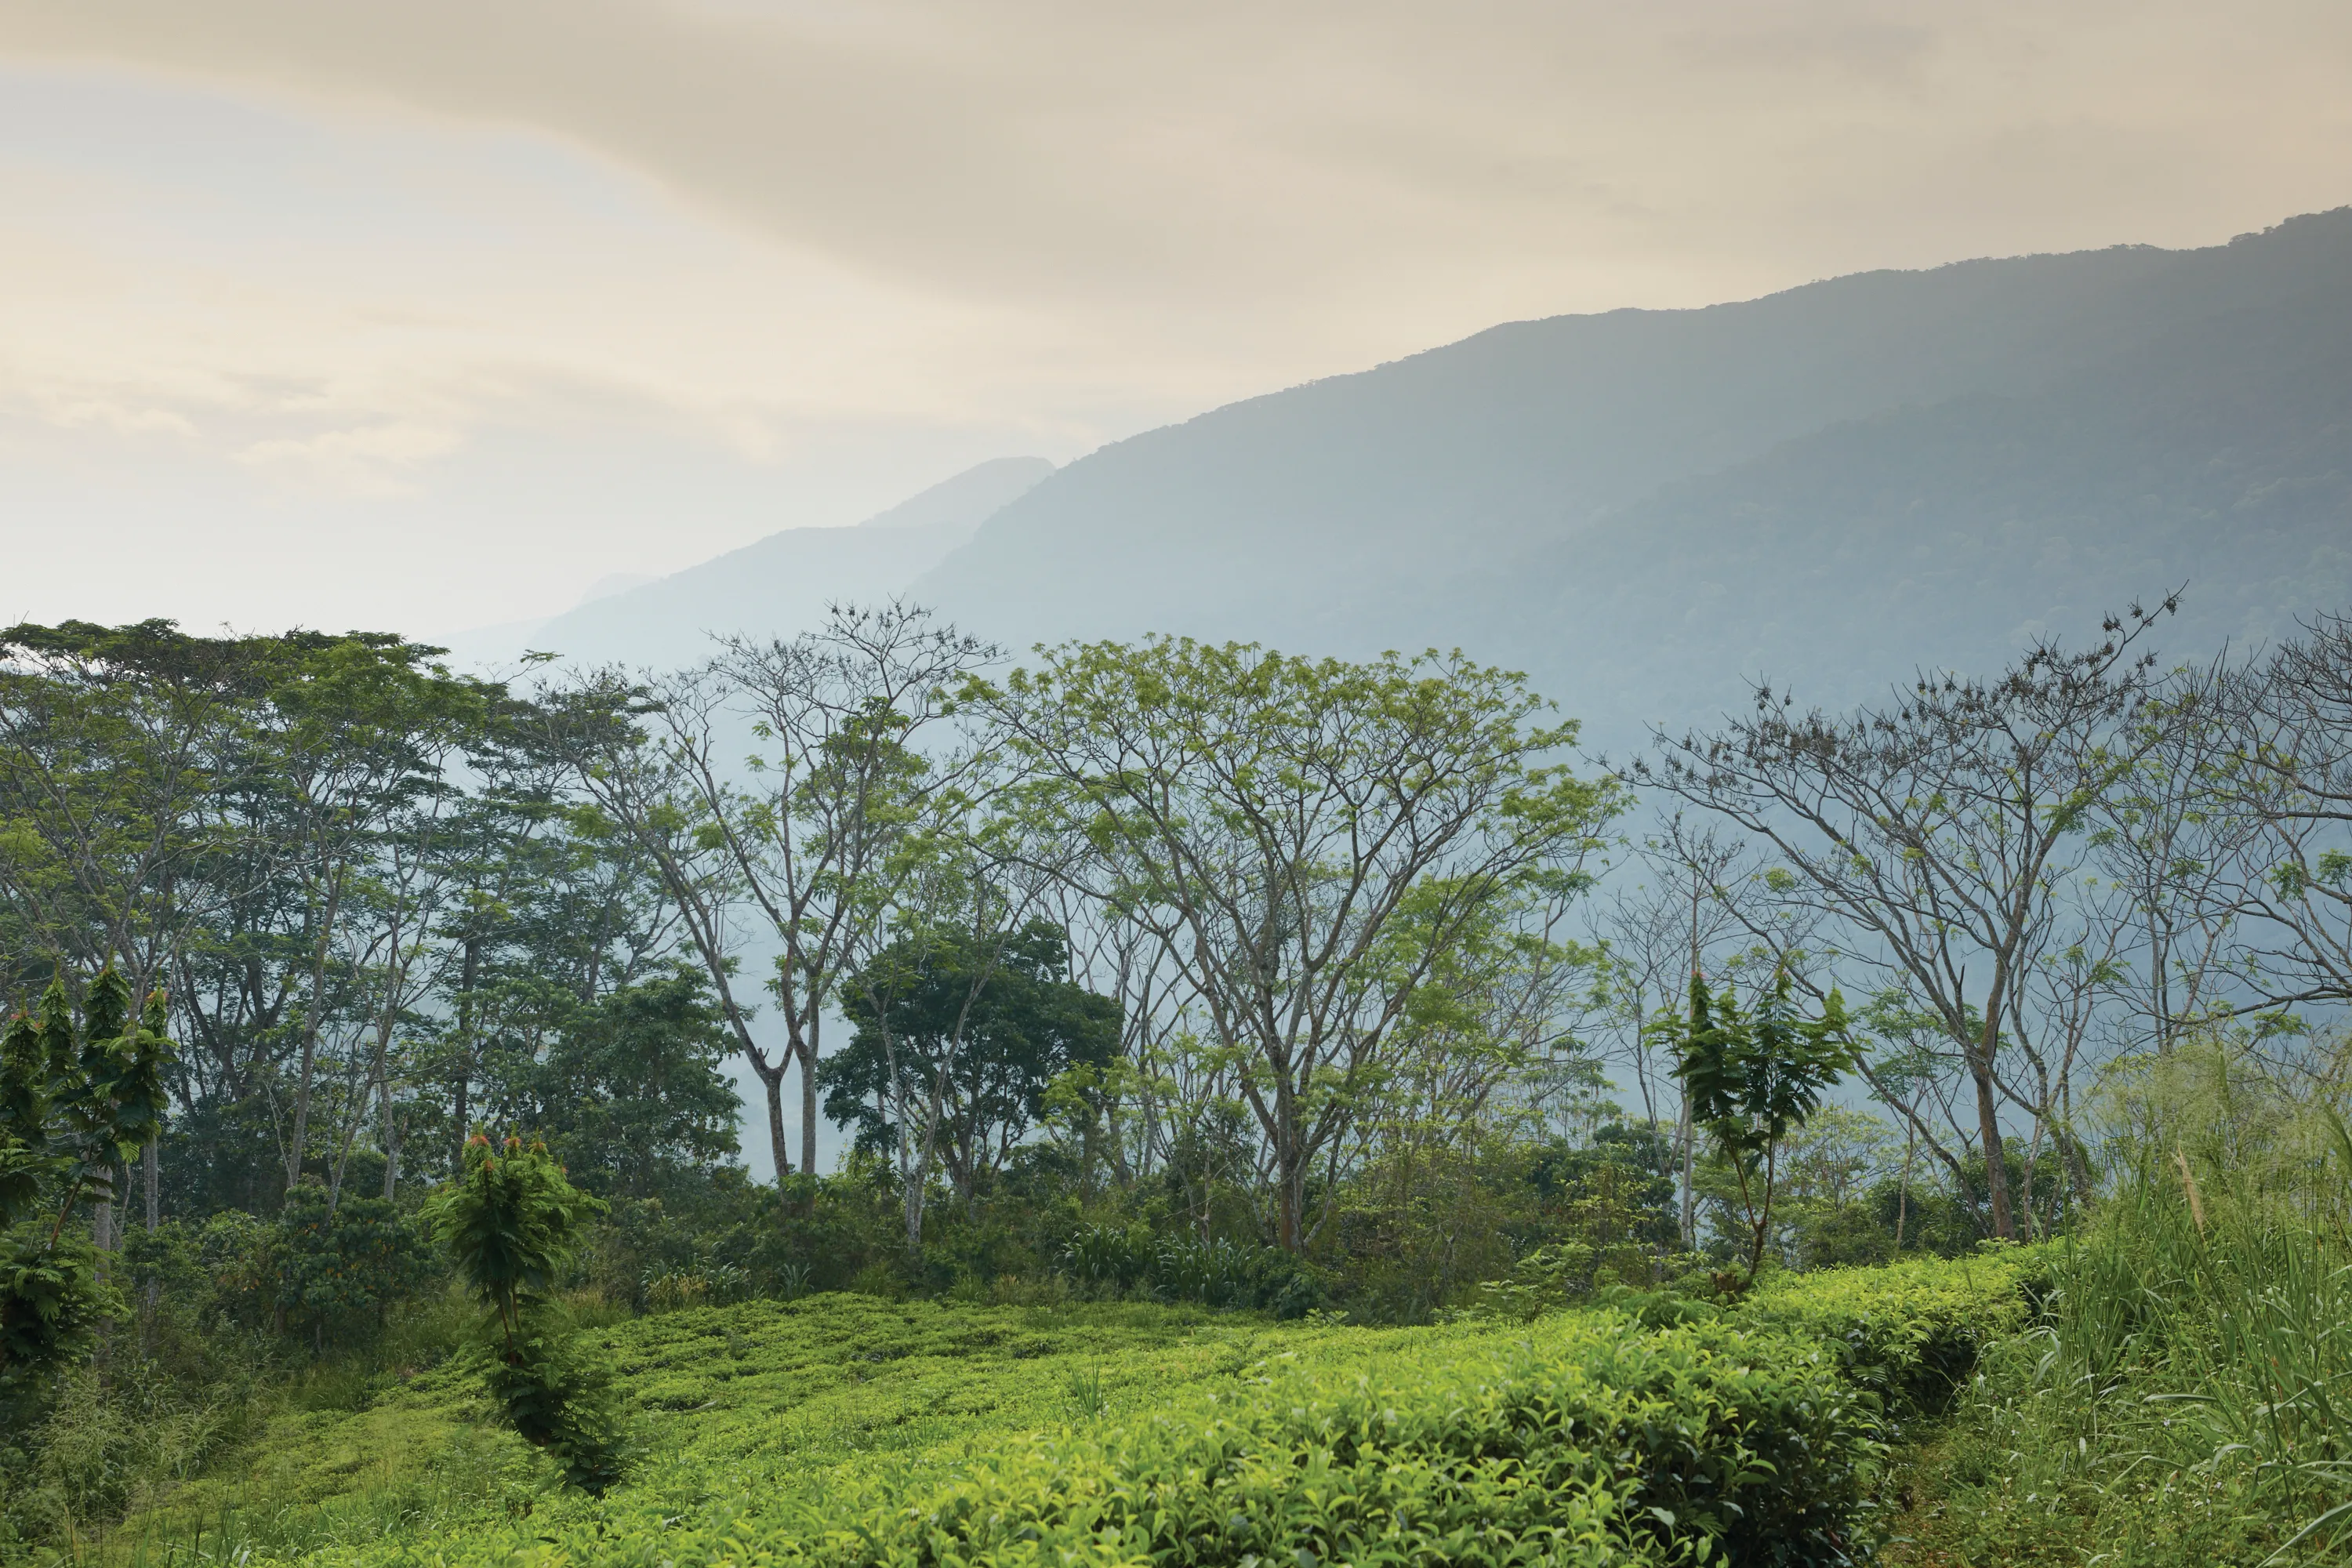 tea plantation and the landscape surrounding it